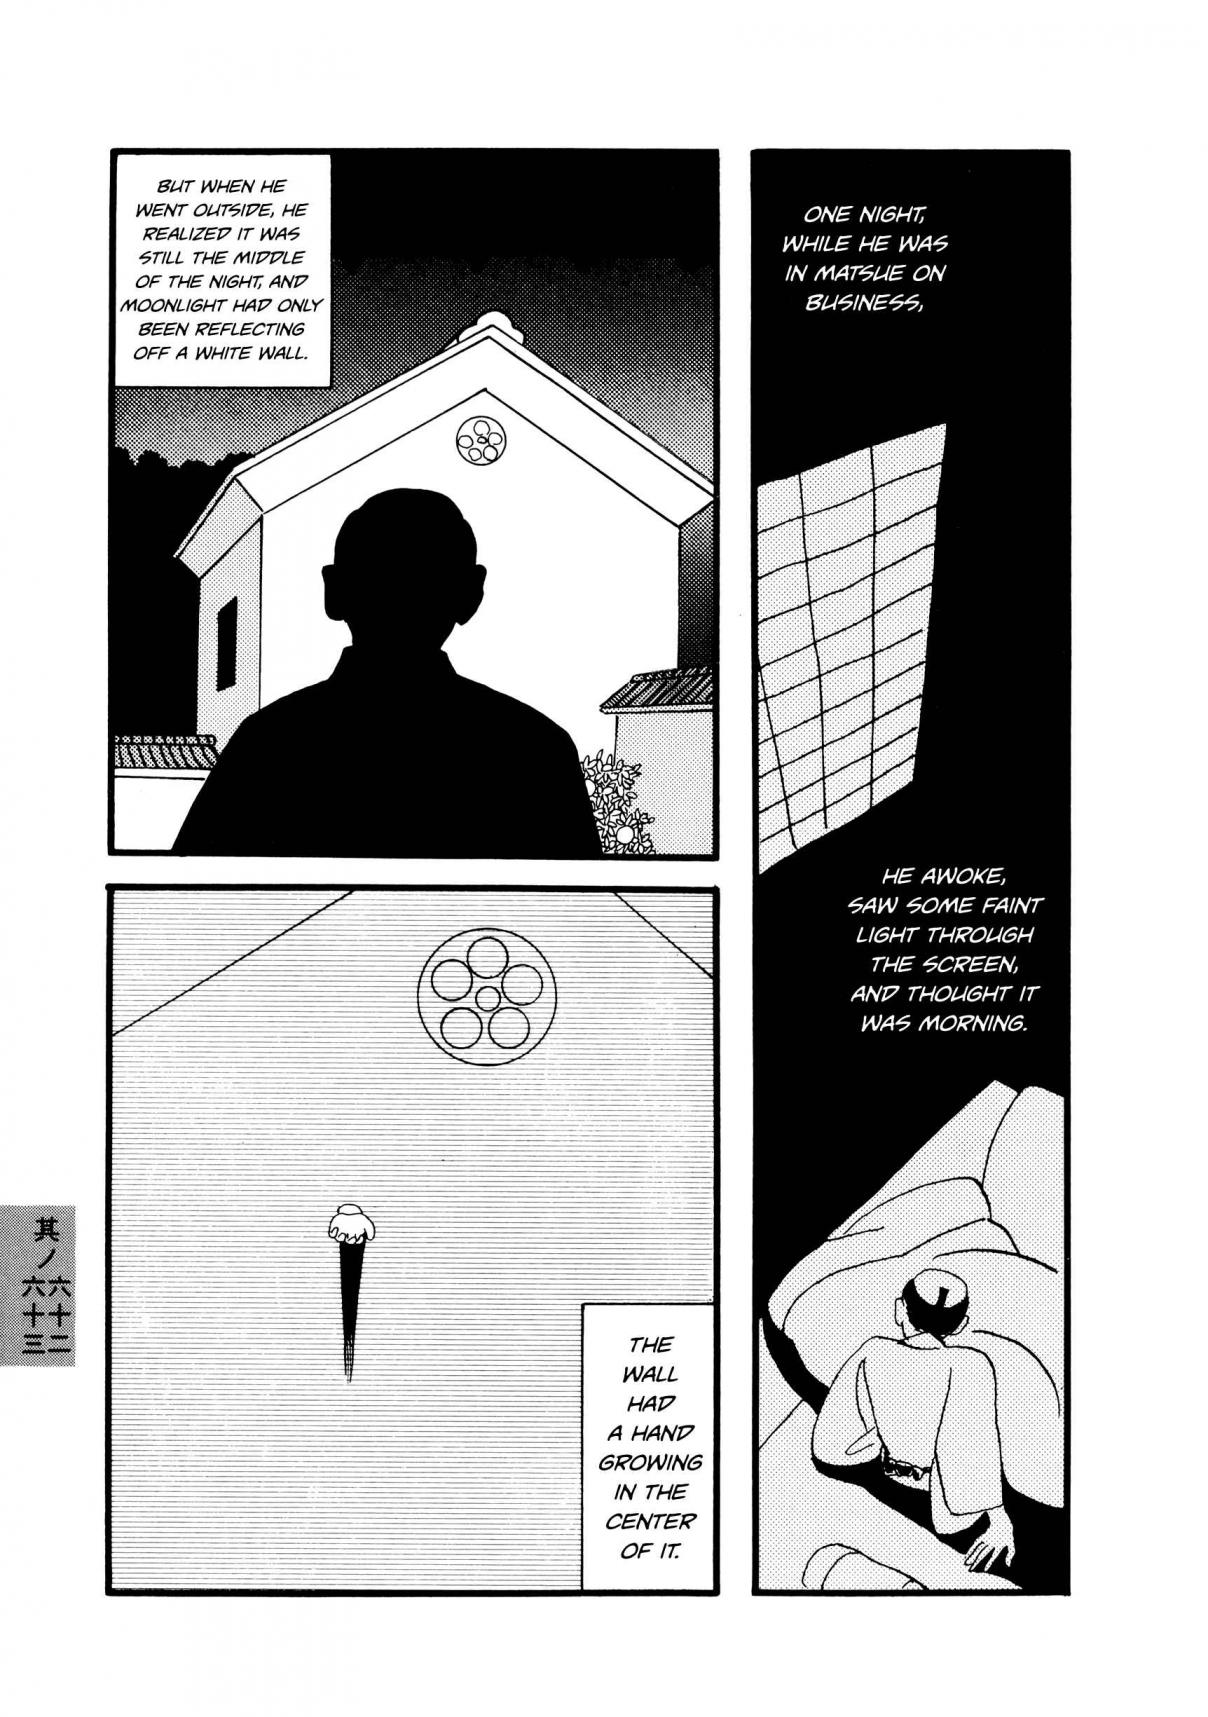 Hyaku Monogatari Vol. 1 Ch. 62 63 Two Eerie Tales of Hands